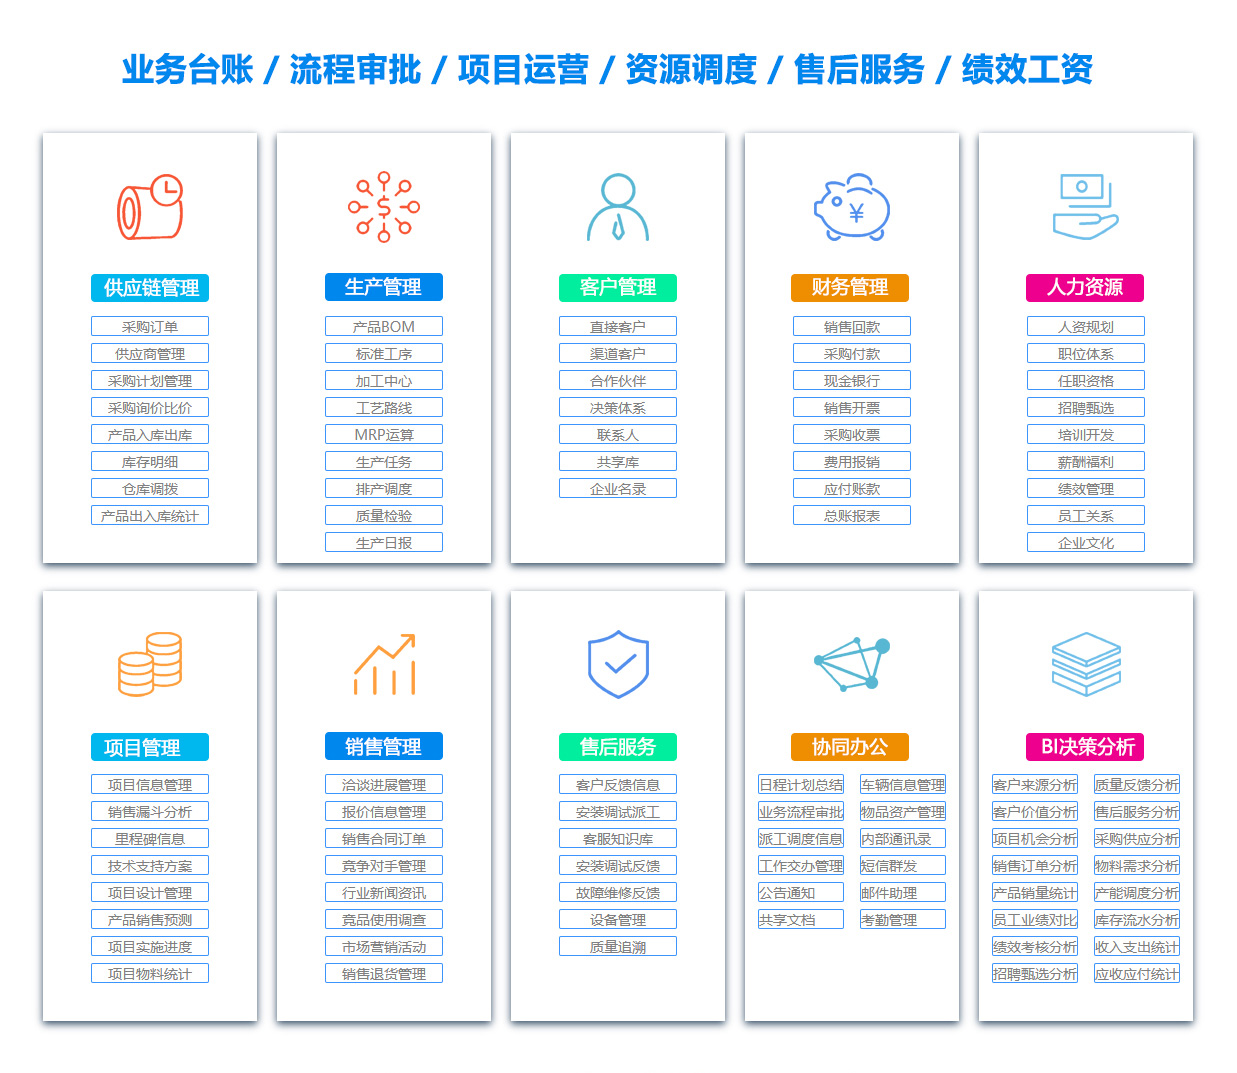 三明MIS:信息管理系统